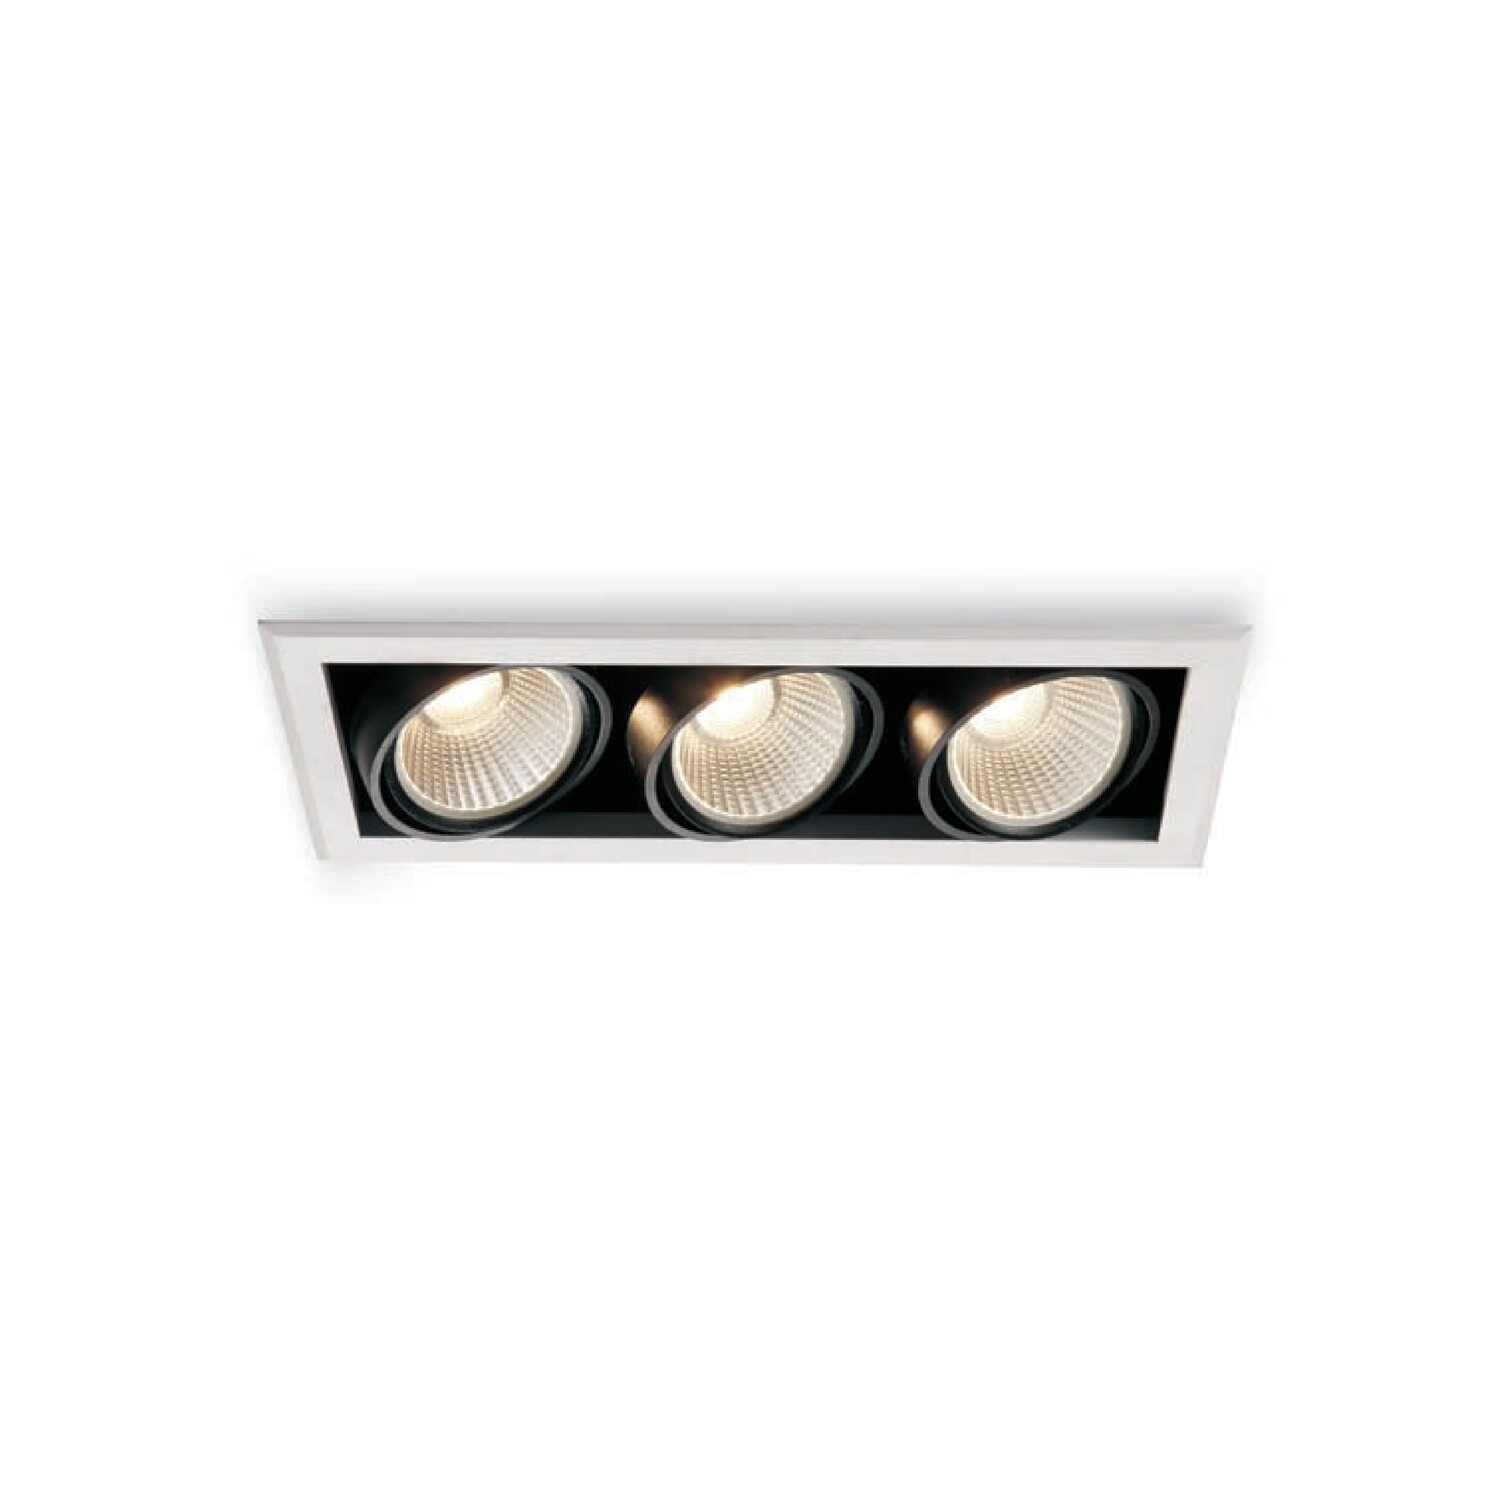 Ojo de buey rectangular con triple luminaria en color blanco y negro con movilidad para enfoque puntual luminosidad alta en luz extra cálida.